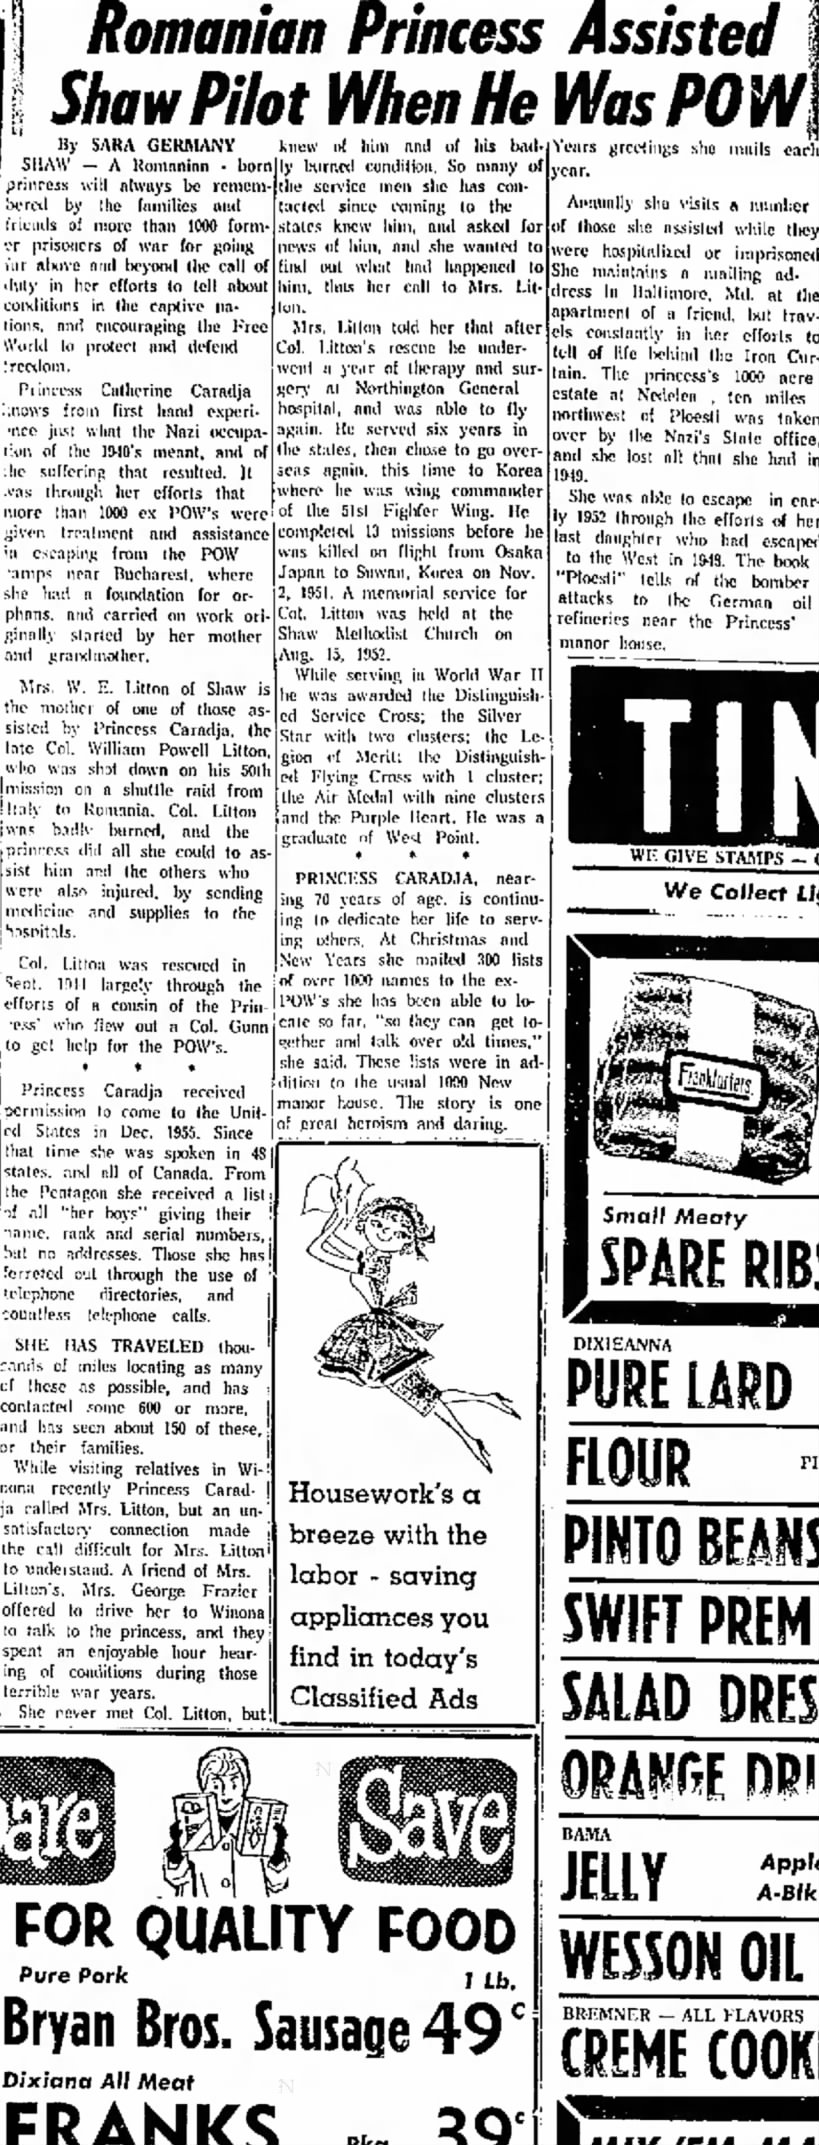 24 Feb 1966 The Delta Democrat-Times Greenville, MS Col Wm Powell